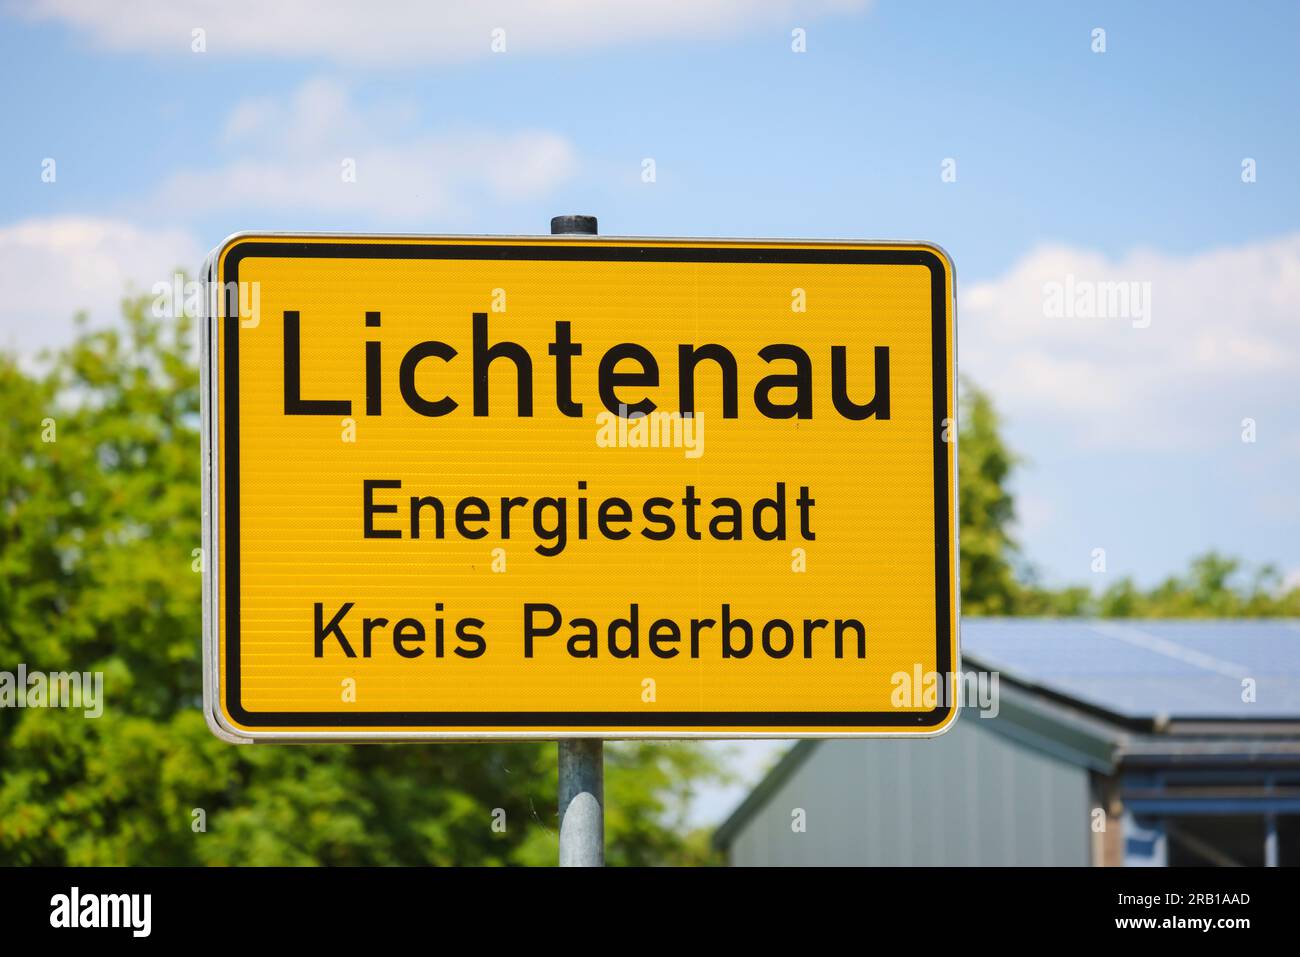 Lichtenau, Nordrhein-Westfalen, Deutschland - Wegweiser zum Stadteingang Lichtenau Energiestadt Krei Paderborn. Der Windpark ist ein wichtiges Ausstellungsprojekt für den Klimaschutz in Ostwestfalen und für die Energiestadt Lichtenau. Stockfoto